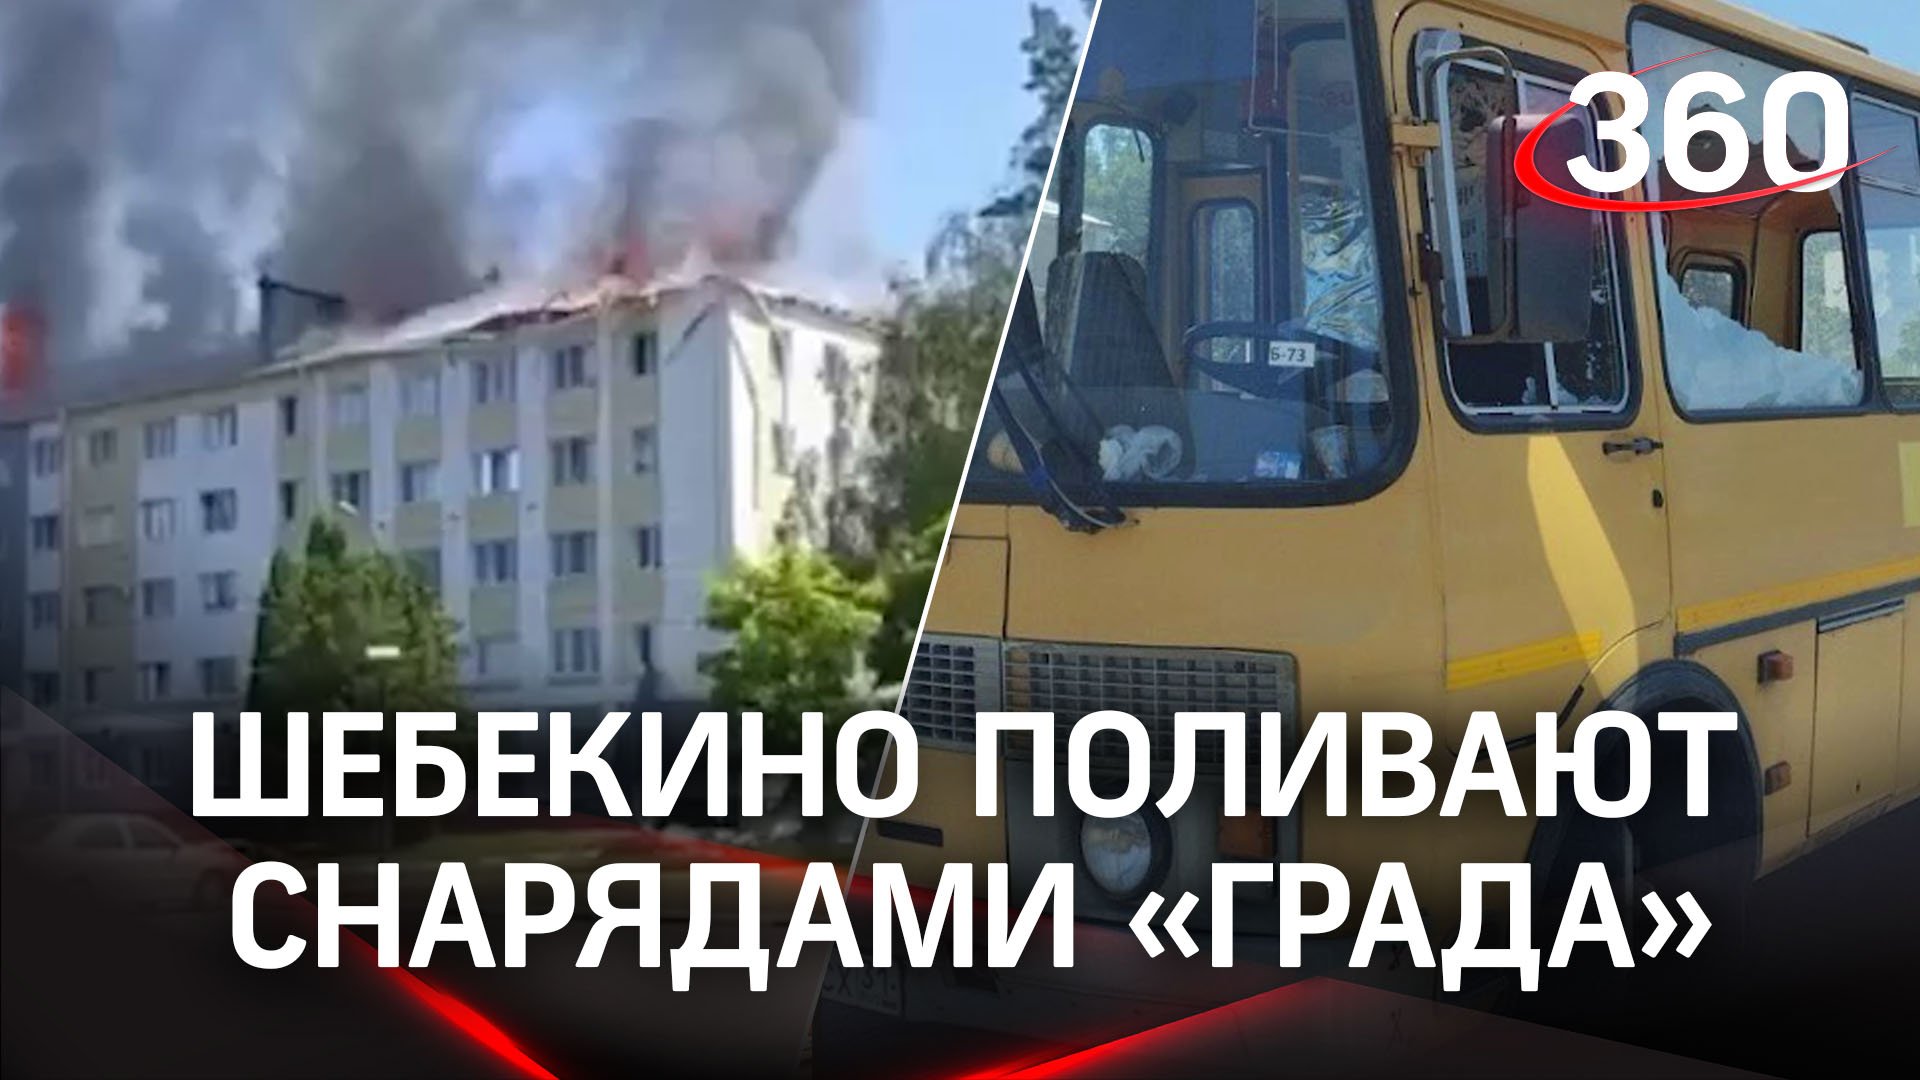 ВСУ обстреливают Шебекино: пожар в общежитии, украинская ракета разнесла автобус «Дети»